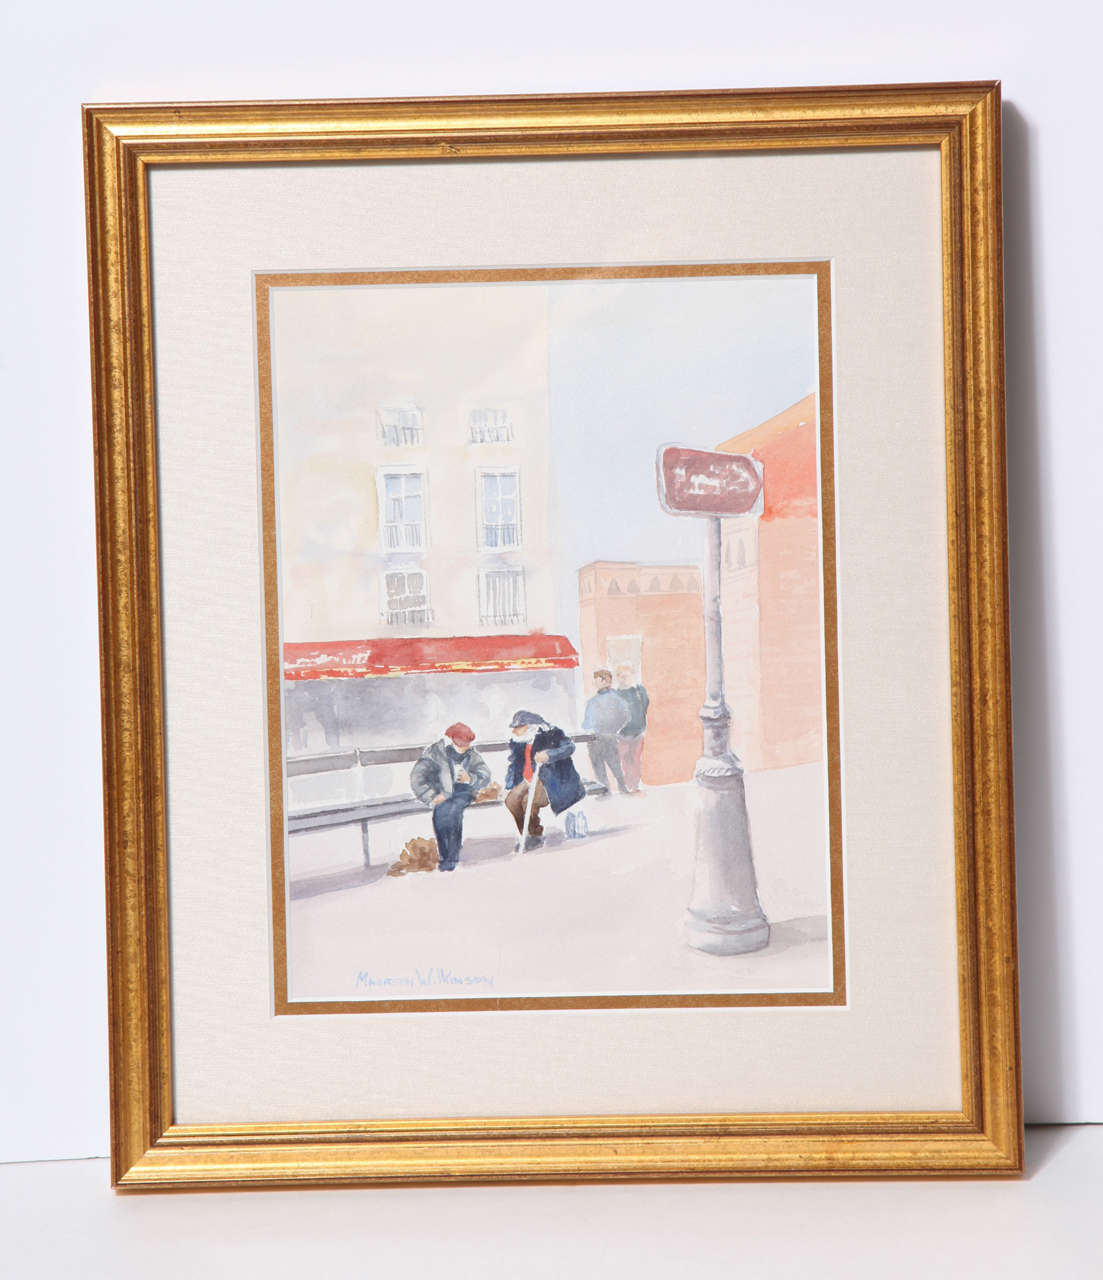 Magnifique aquarelle de Maureen Wilkenson, CT.
Vie de la rue à Paris, vers 1960. Nouveau cadre.